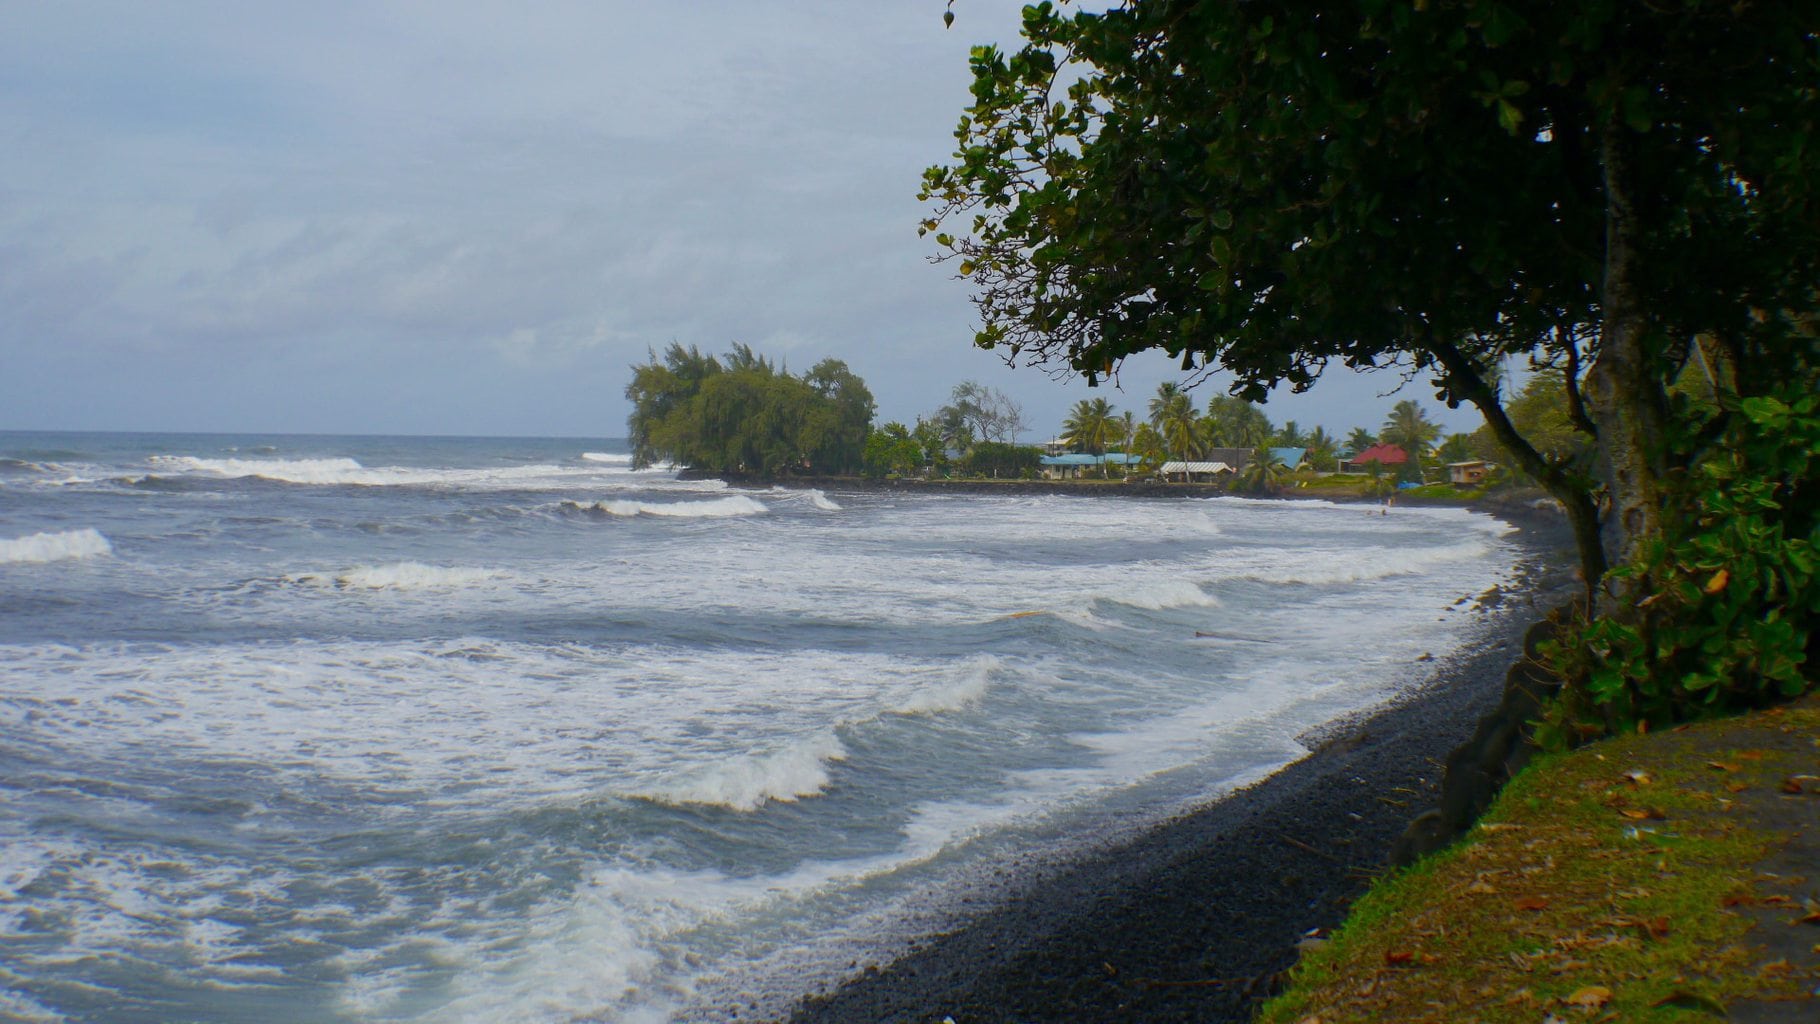 "The beaches of Tahiti"